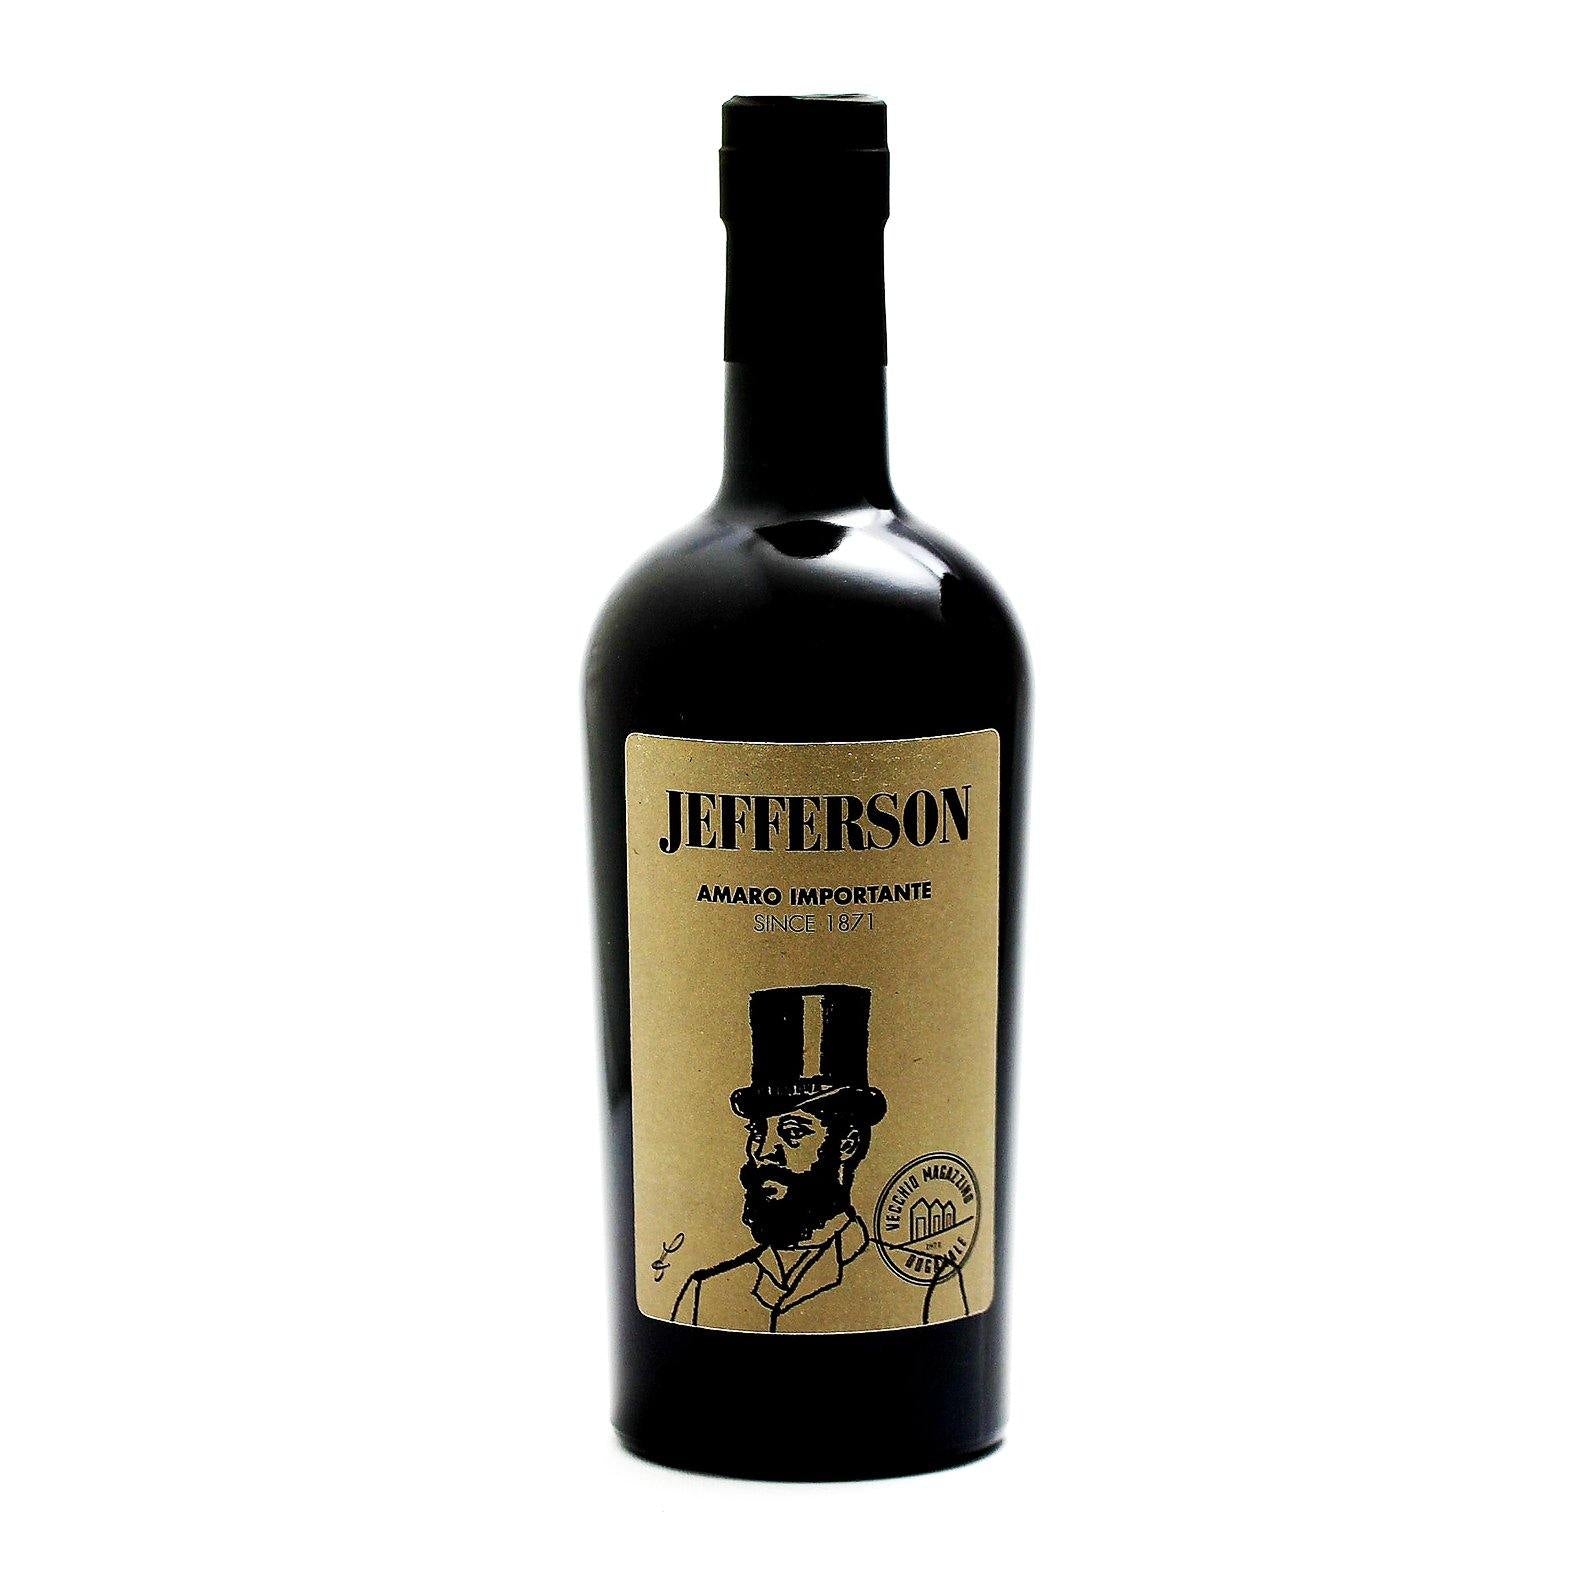 Laciviltadelbere Amaro Importante "Jefferson" Vecchio Magazzino Doganale